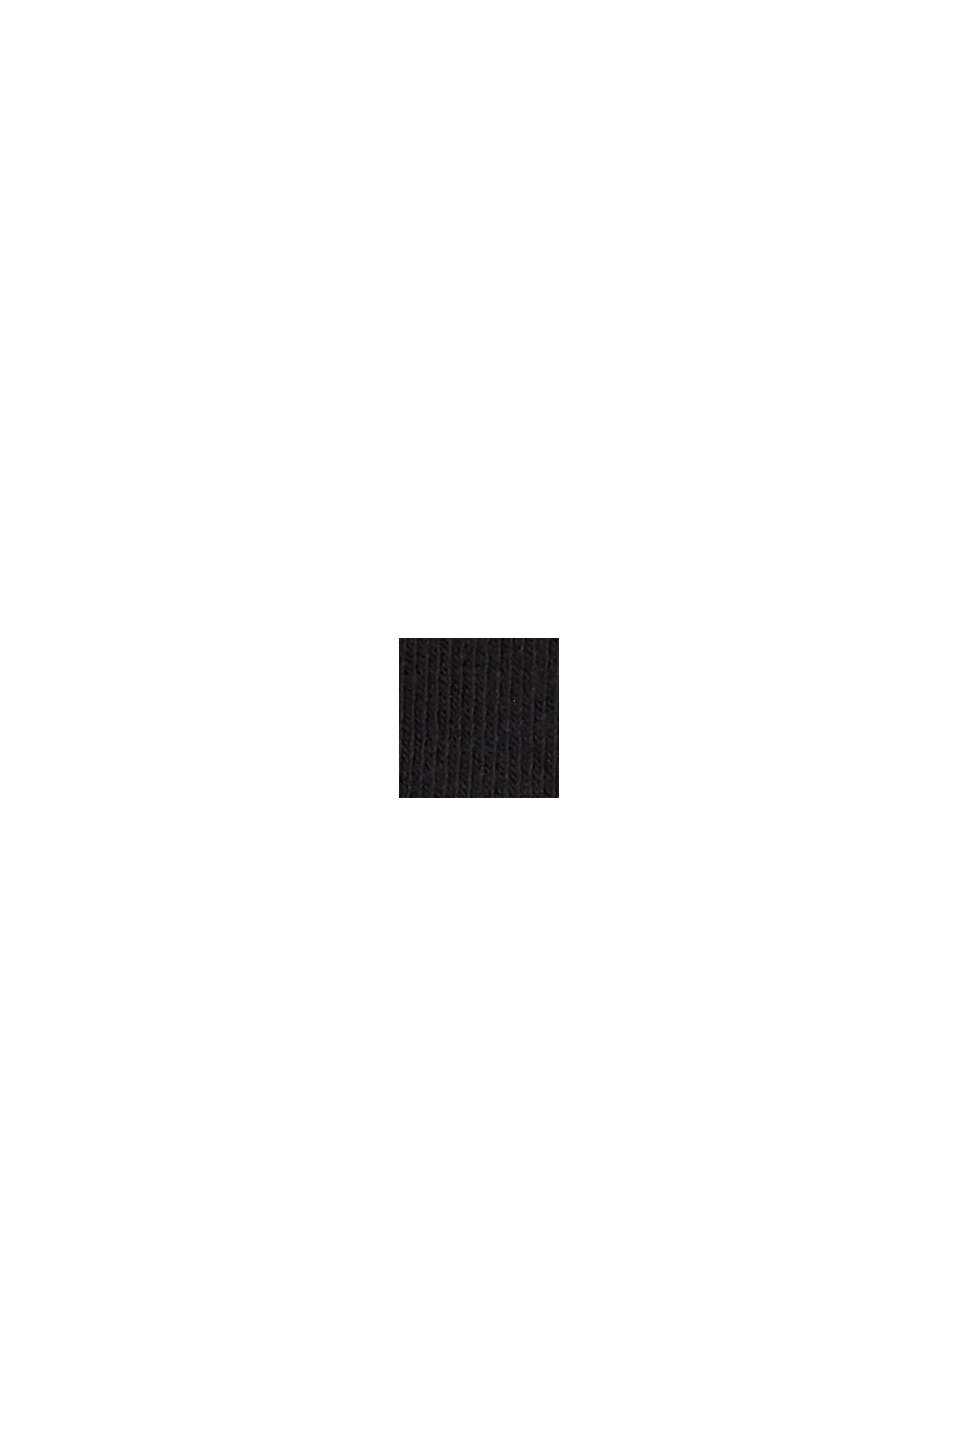 Strumpor i 2-pack med logo, av ekobomullsmix, BLACK, swatch